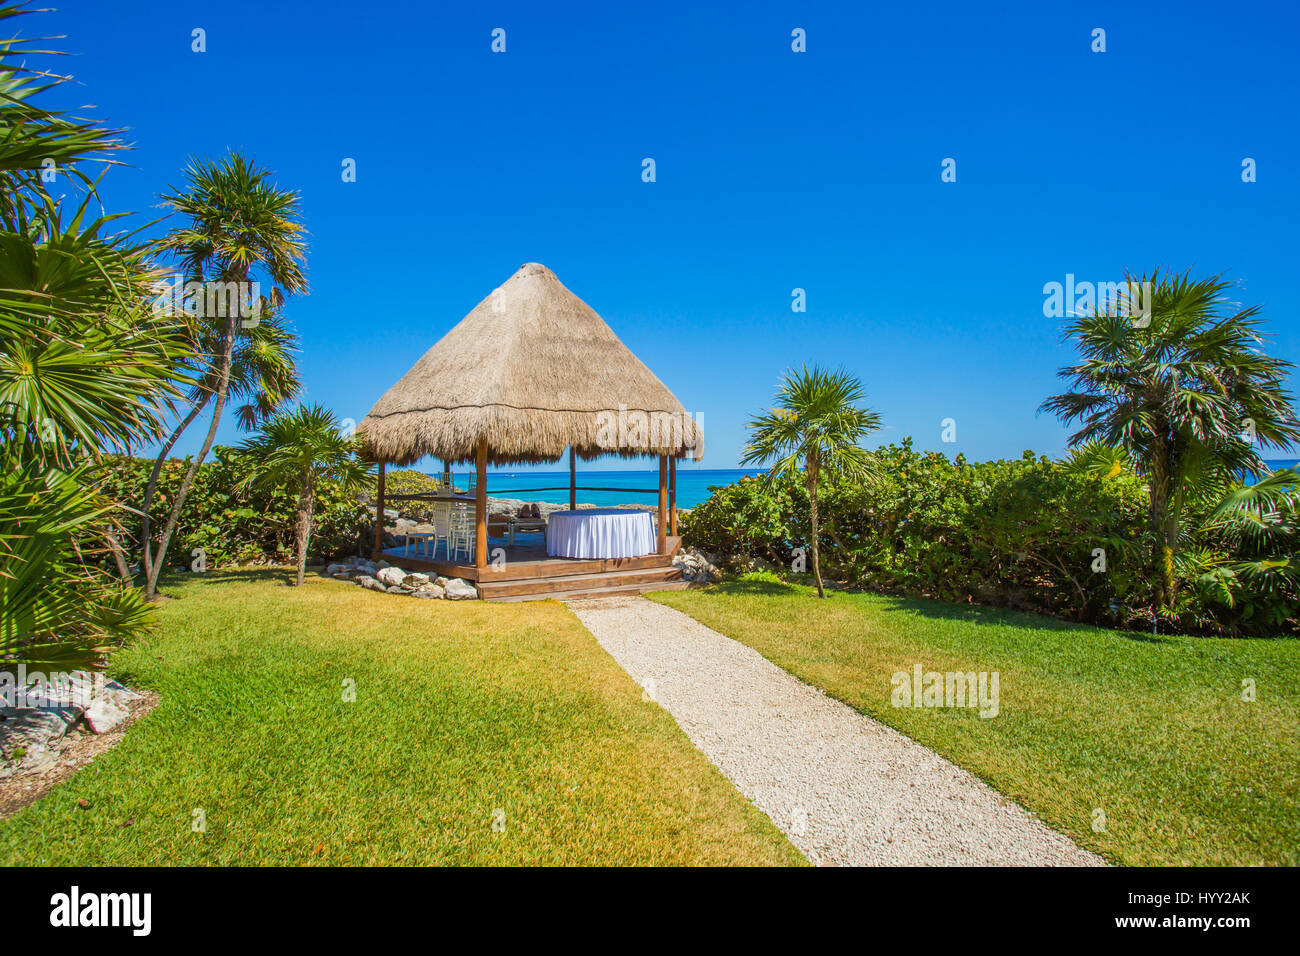 Spa des Caraïbes sur la plage tropicale en mer des caraïbes, Cancun, Mexique Banque D'Images